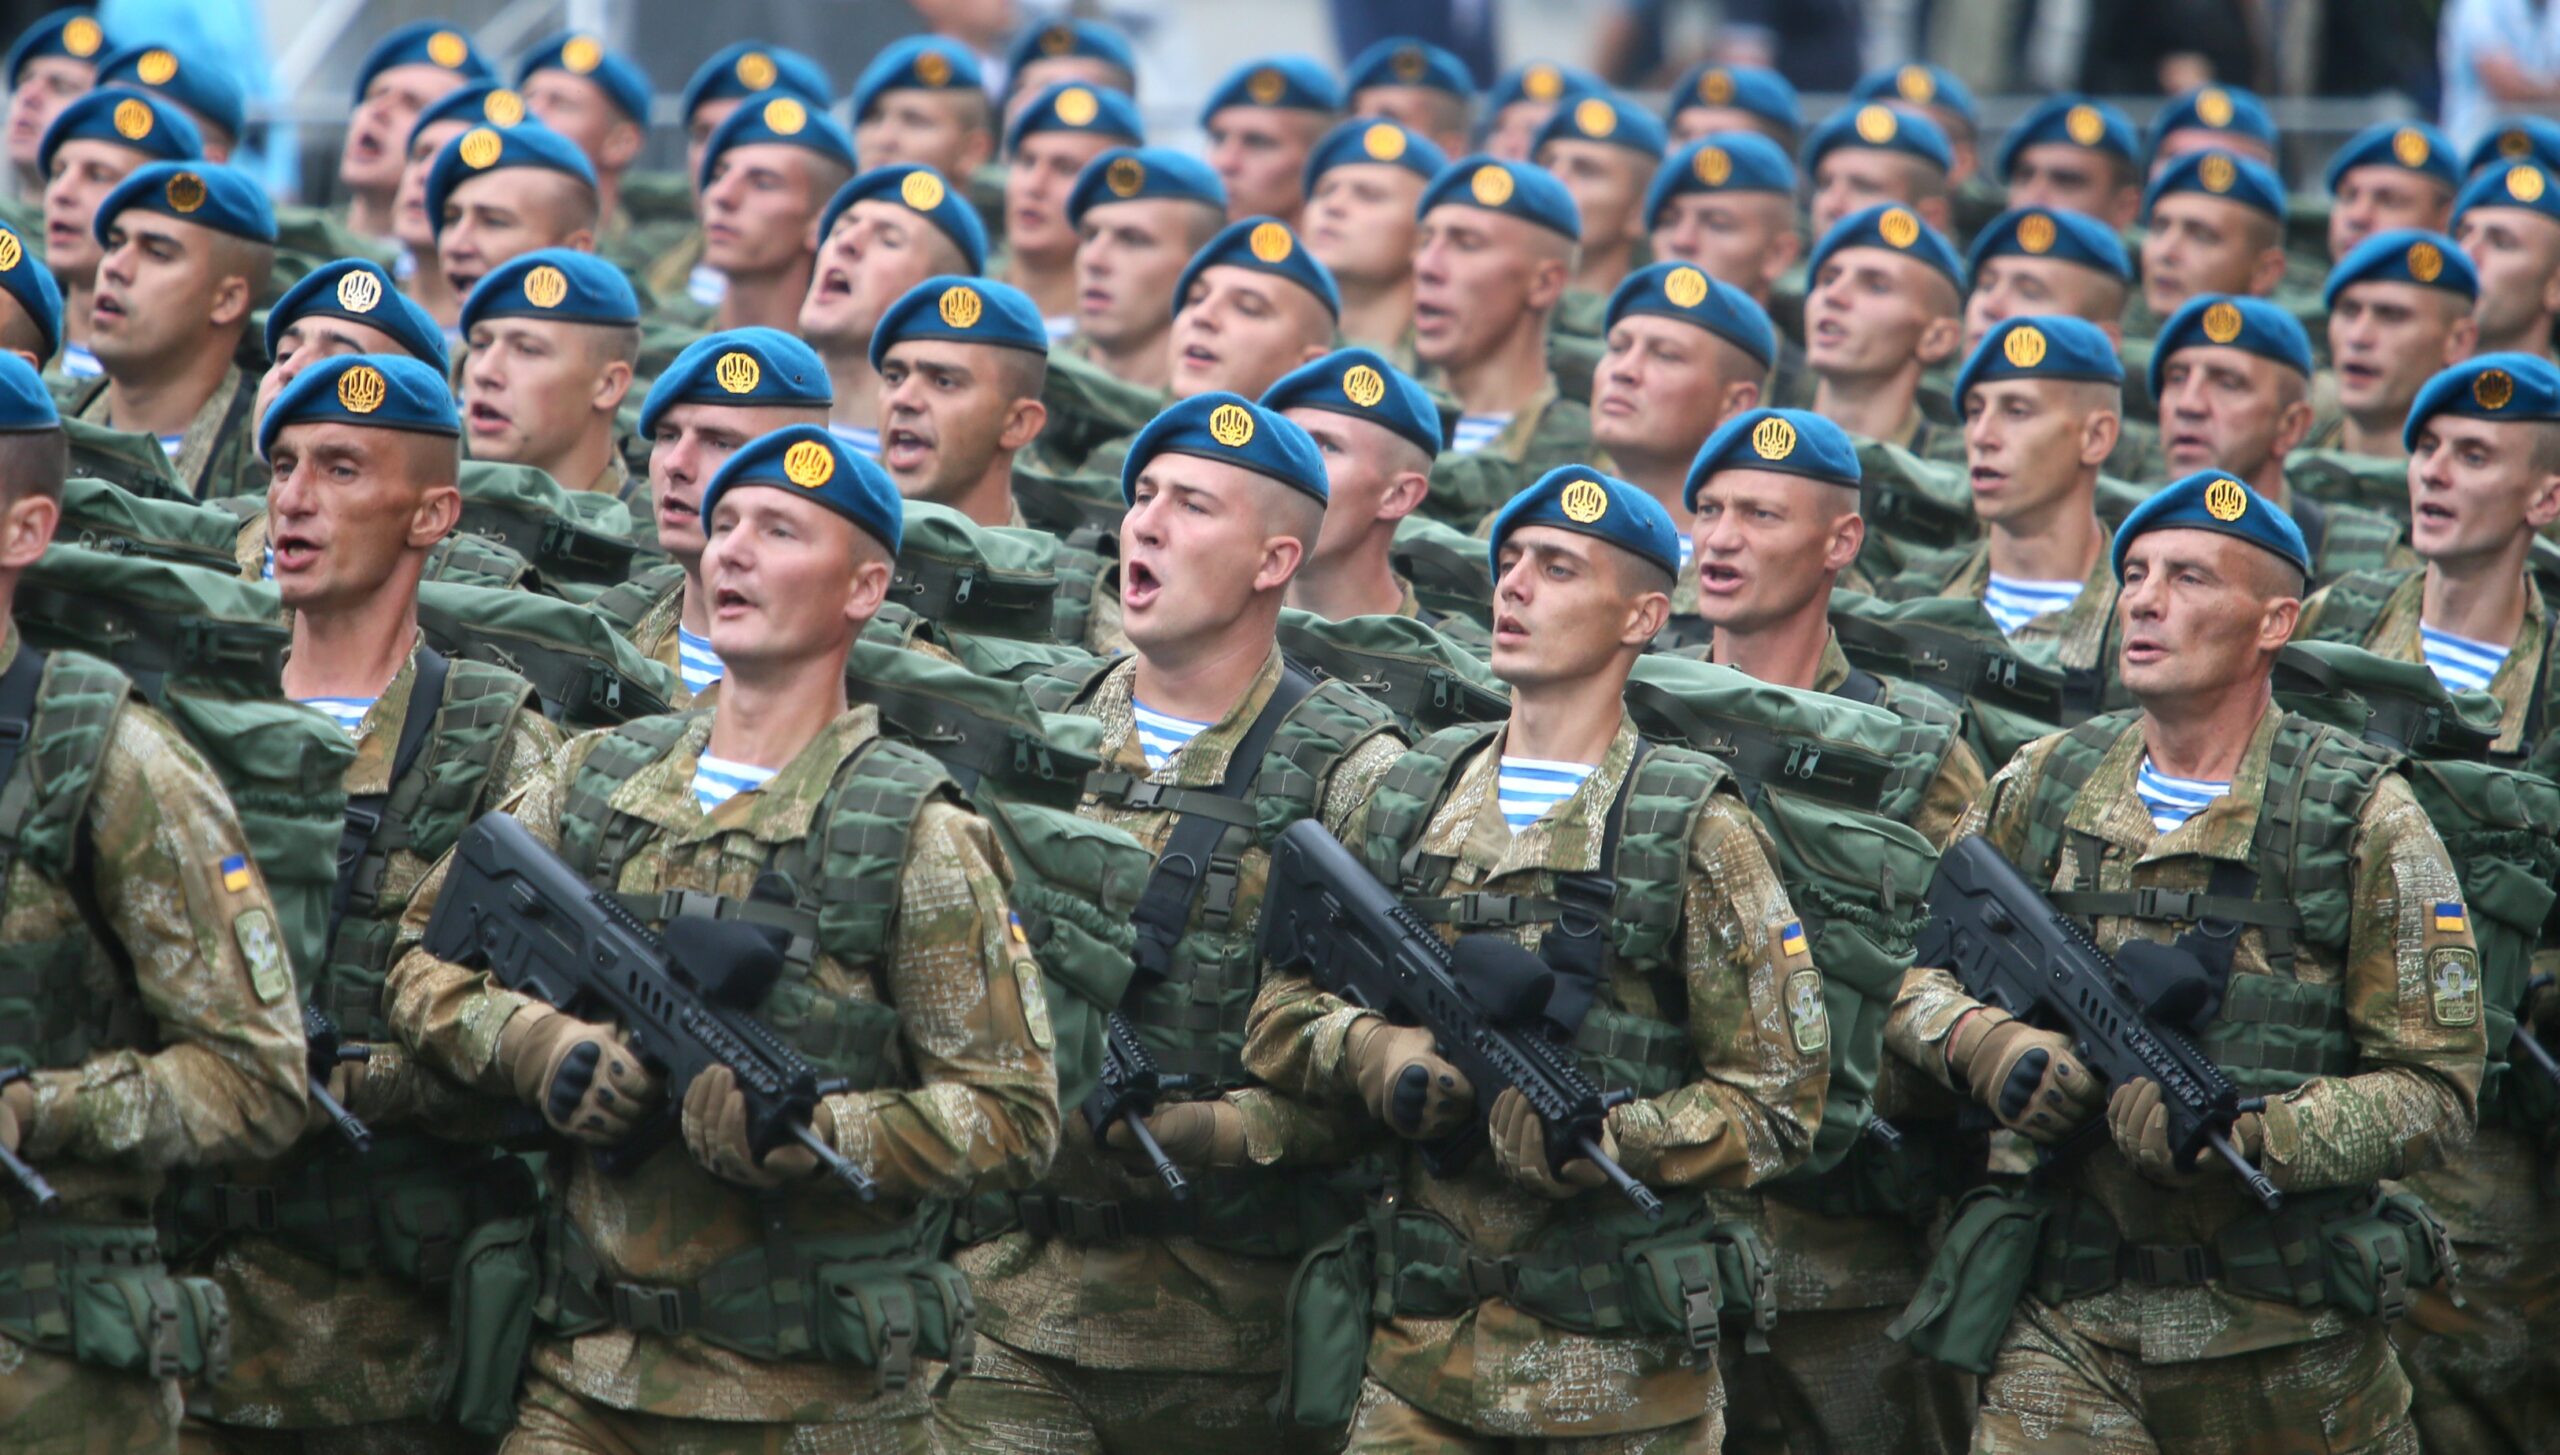 من الاستعراض العسكري للقوات الاوكرانية